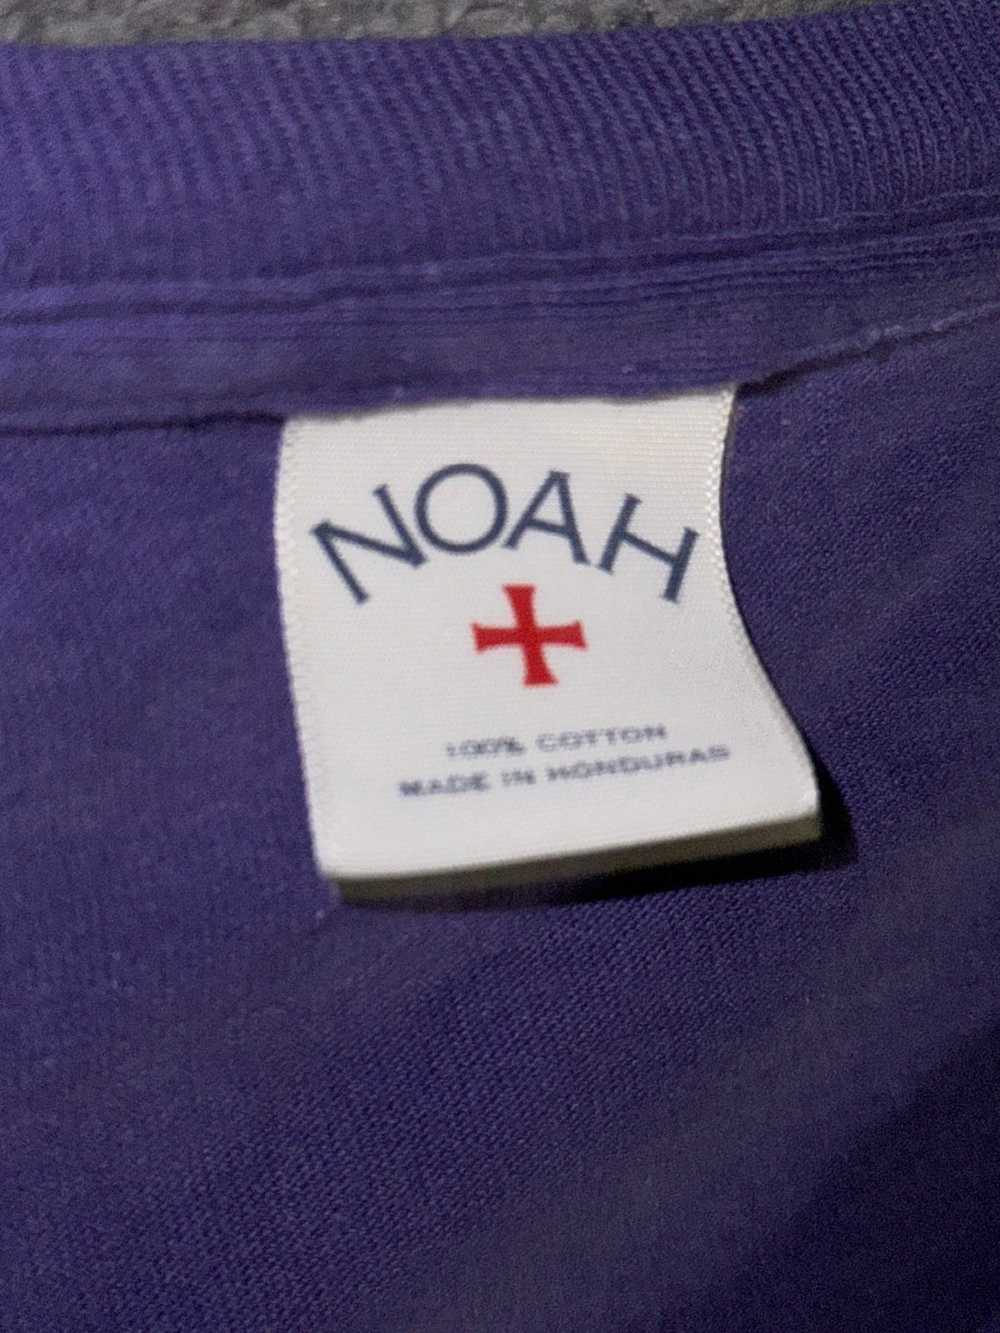 Noah Noah x New Order Technique tee - image 3